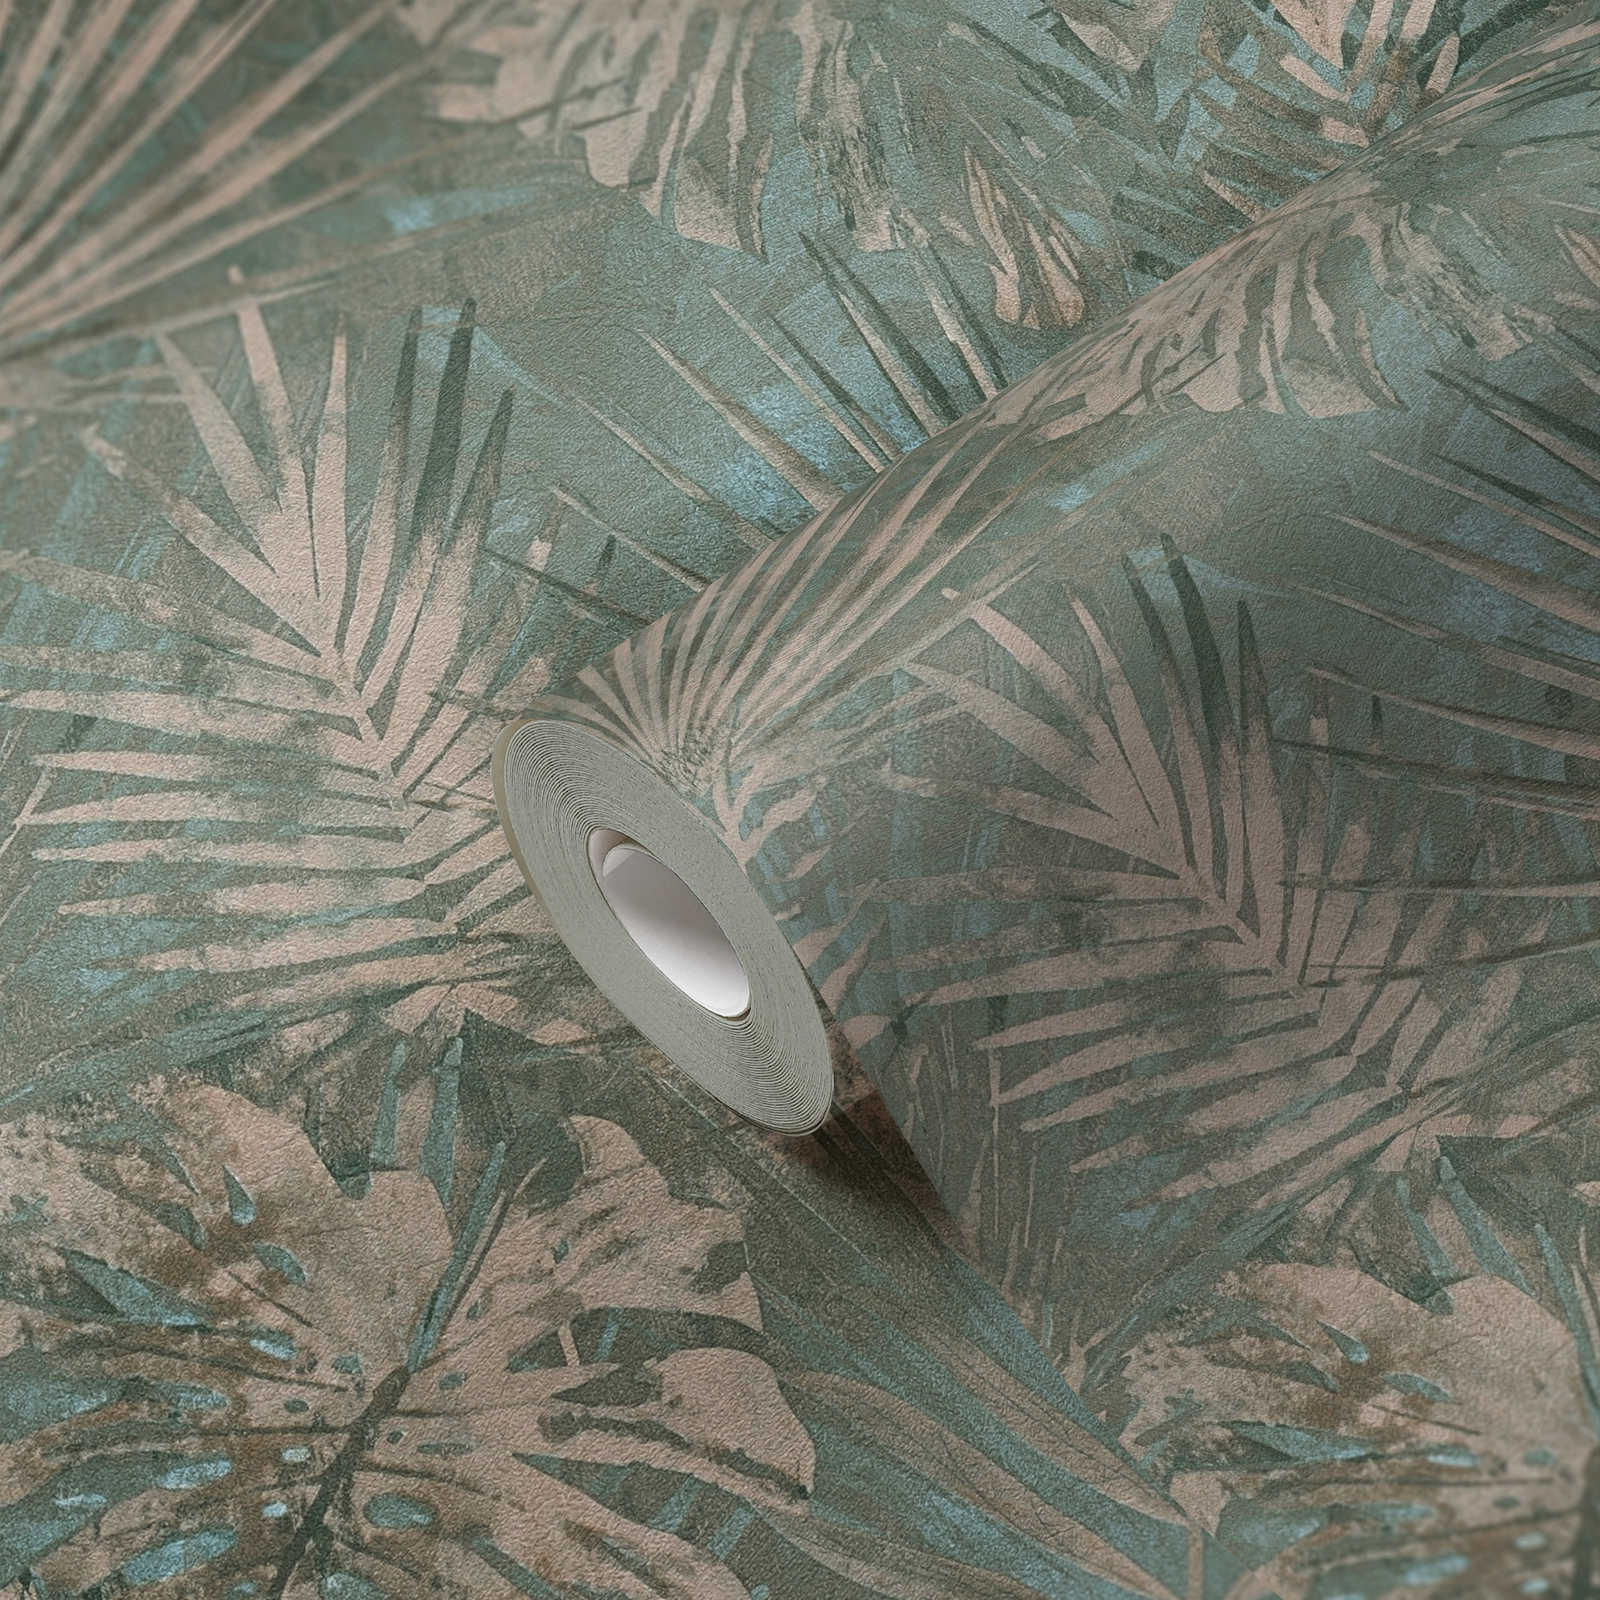             PVC-vrij behang met jungle patroon in used look - groen, blauw, beige
        